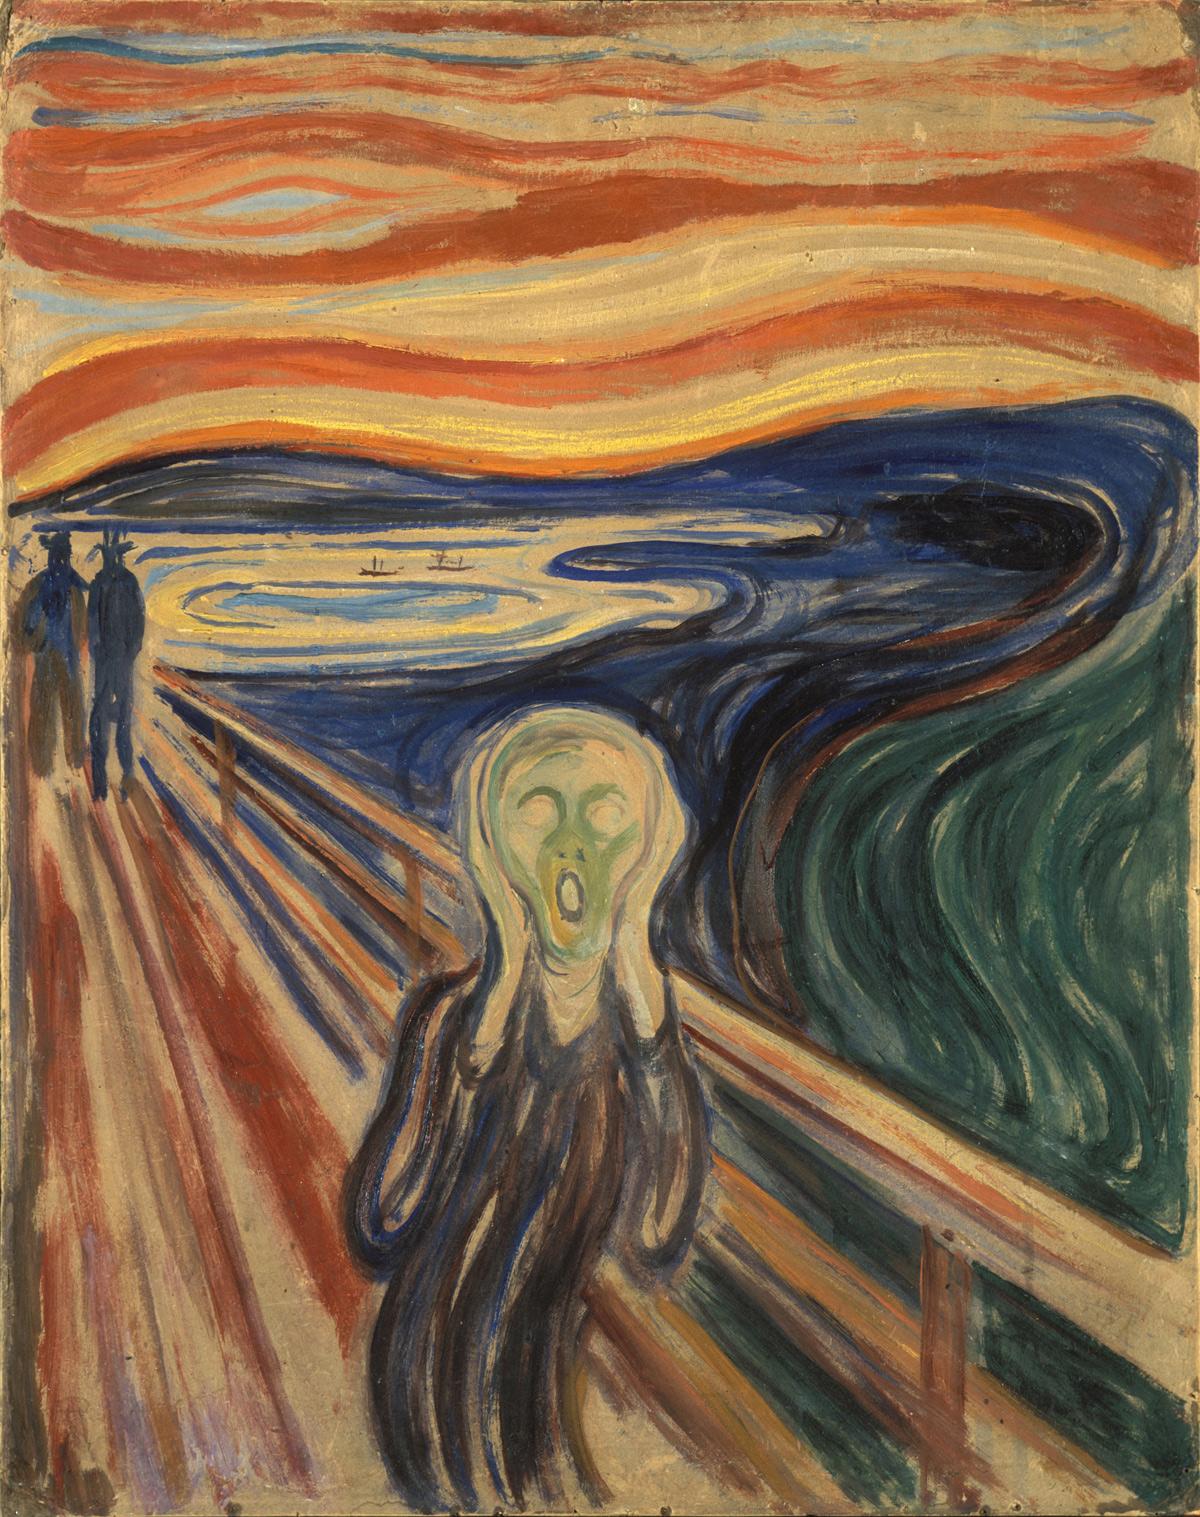 4911 Edvard Munch The Scream - Die Kunst tritt ein ins Zeitalter des Imperialismus - Angst, Edvard Munch, Imperialismus, Malerei, Umwelt und Natur - Kultur